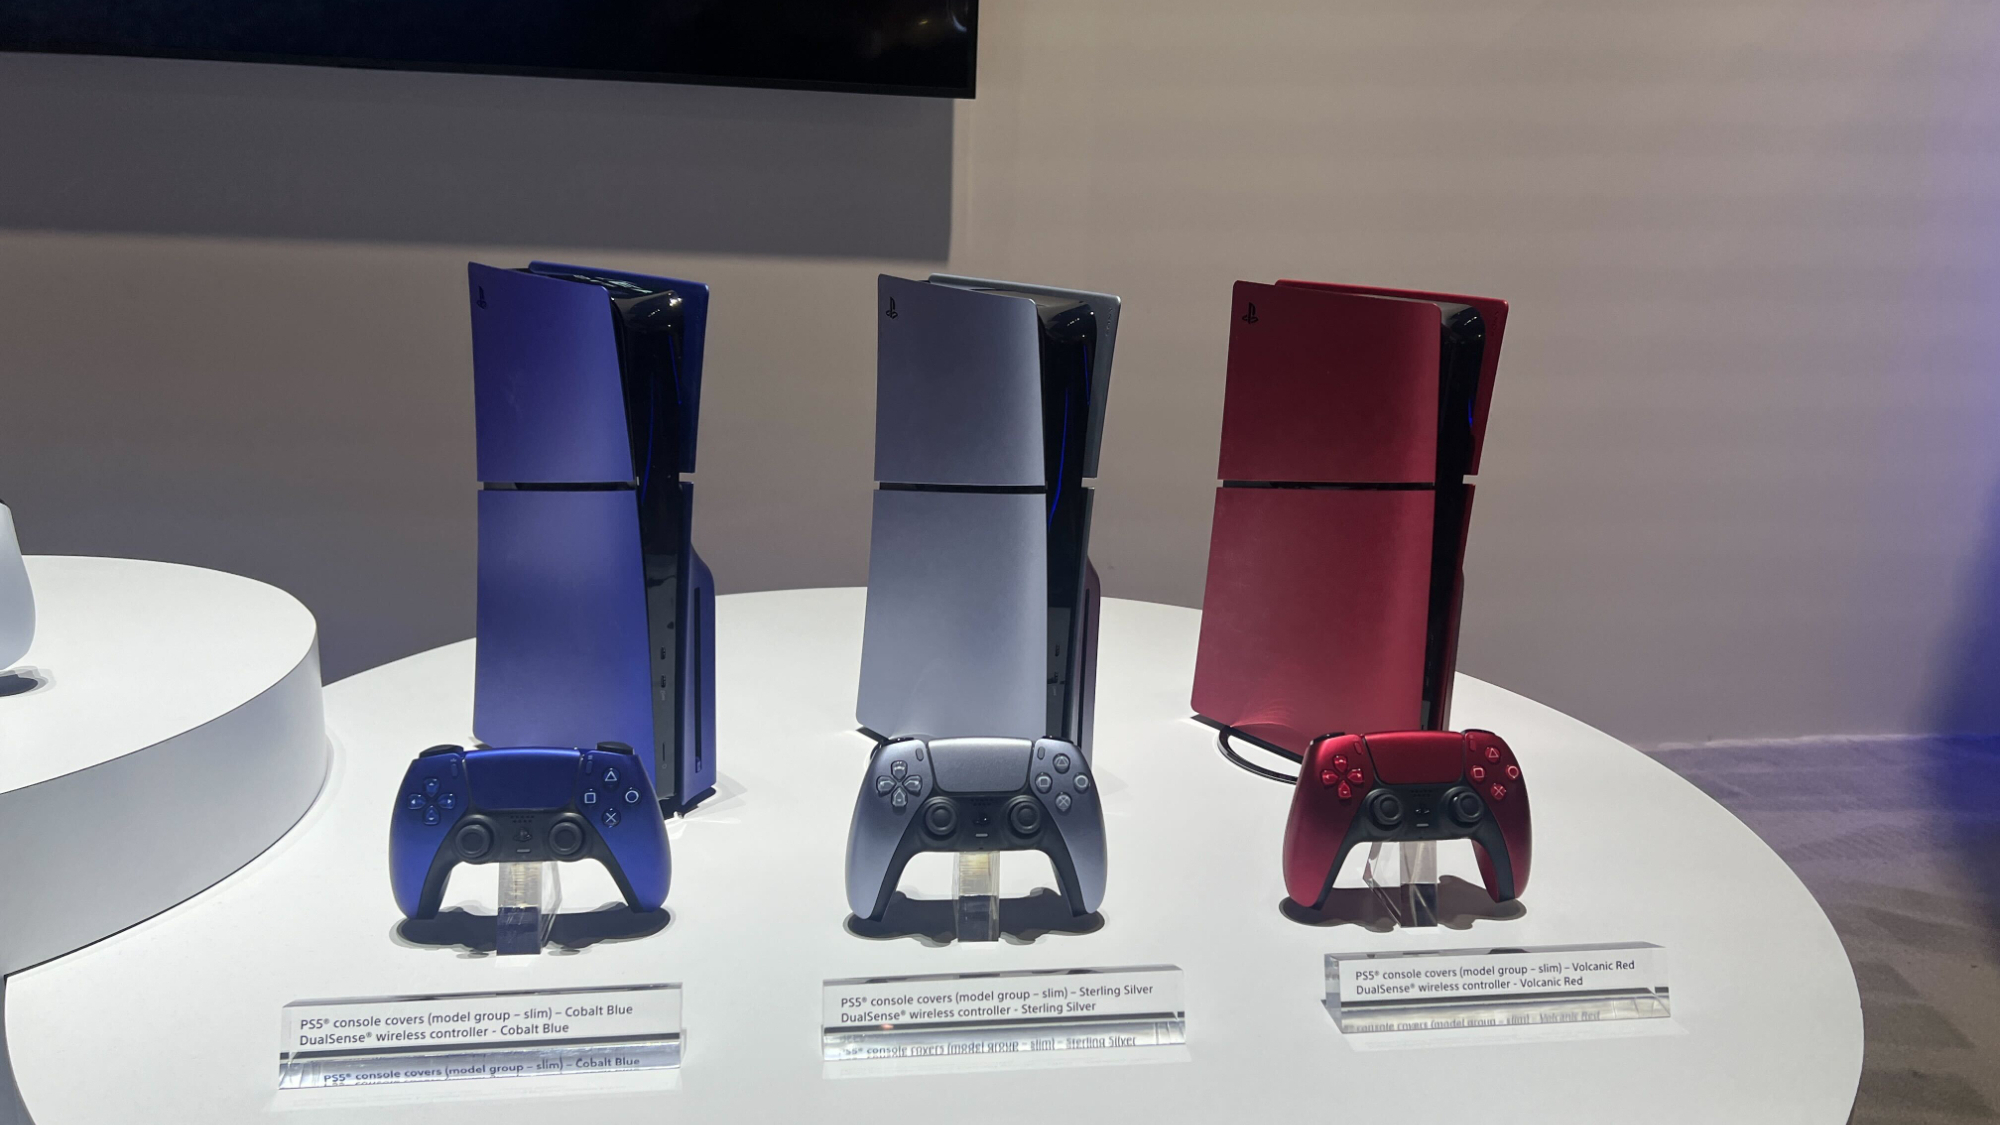 Впервые были показаны чехлы для новых консолей PS5 Slim в трио цветов Deep Earth